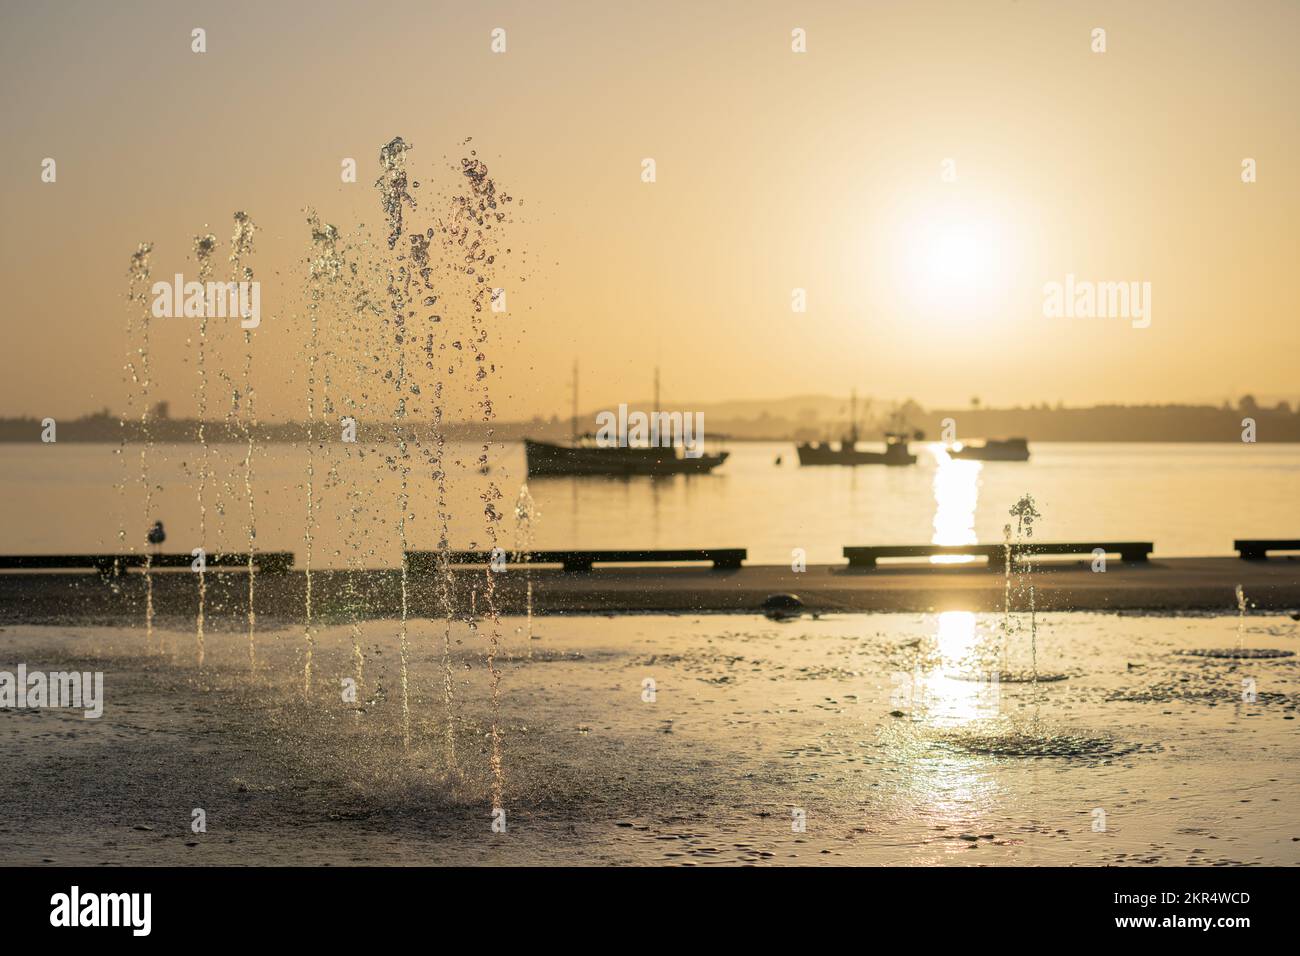 La fuente de concentración en el agua lanza chorros de agua en el aire contra el tono dorado del amanecer en la orilla del centro de Tauranga Foto de stock